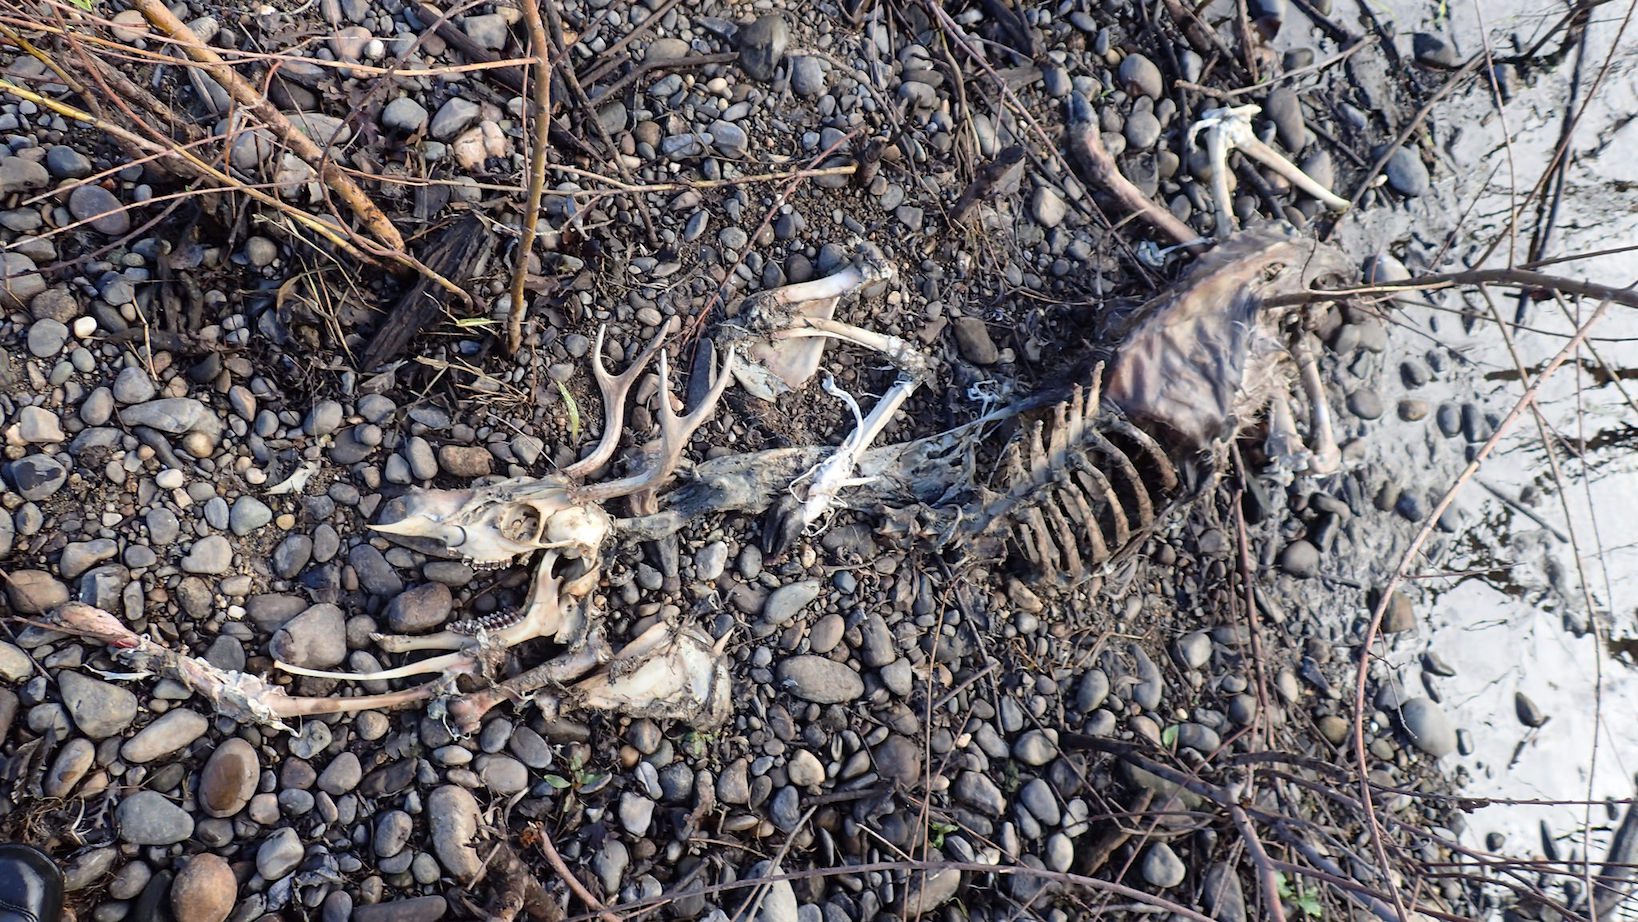 Deer carcass